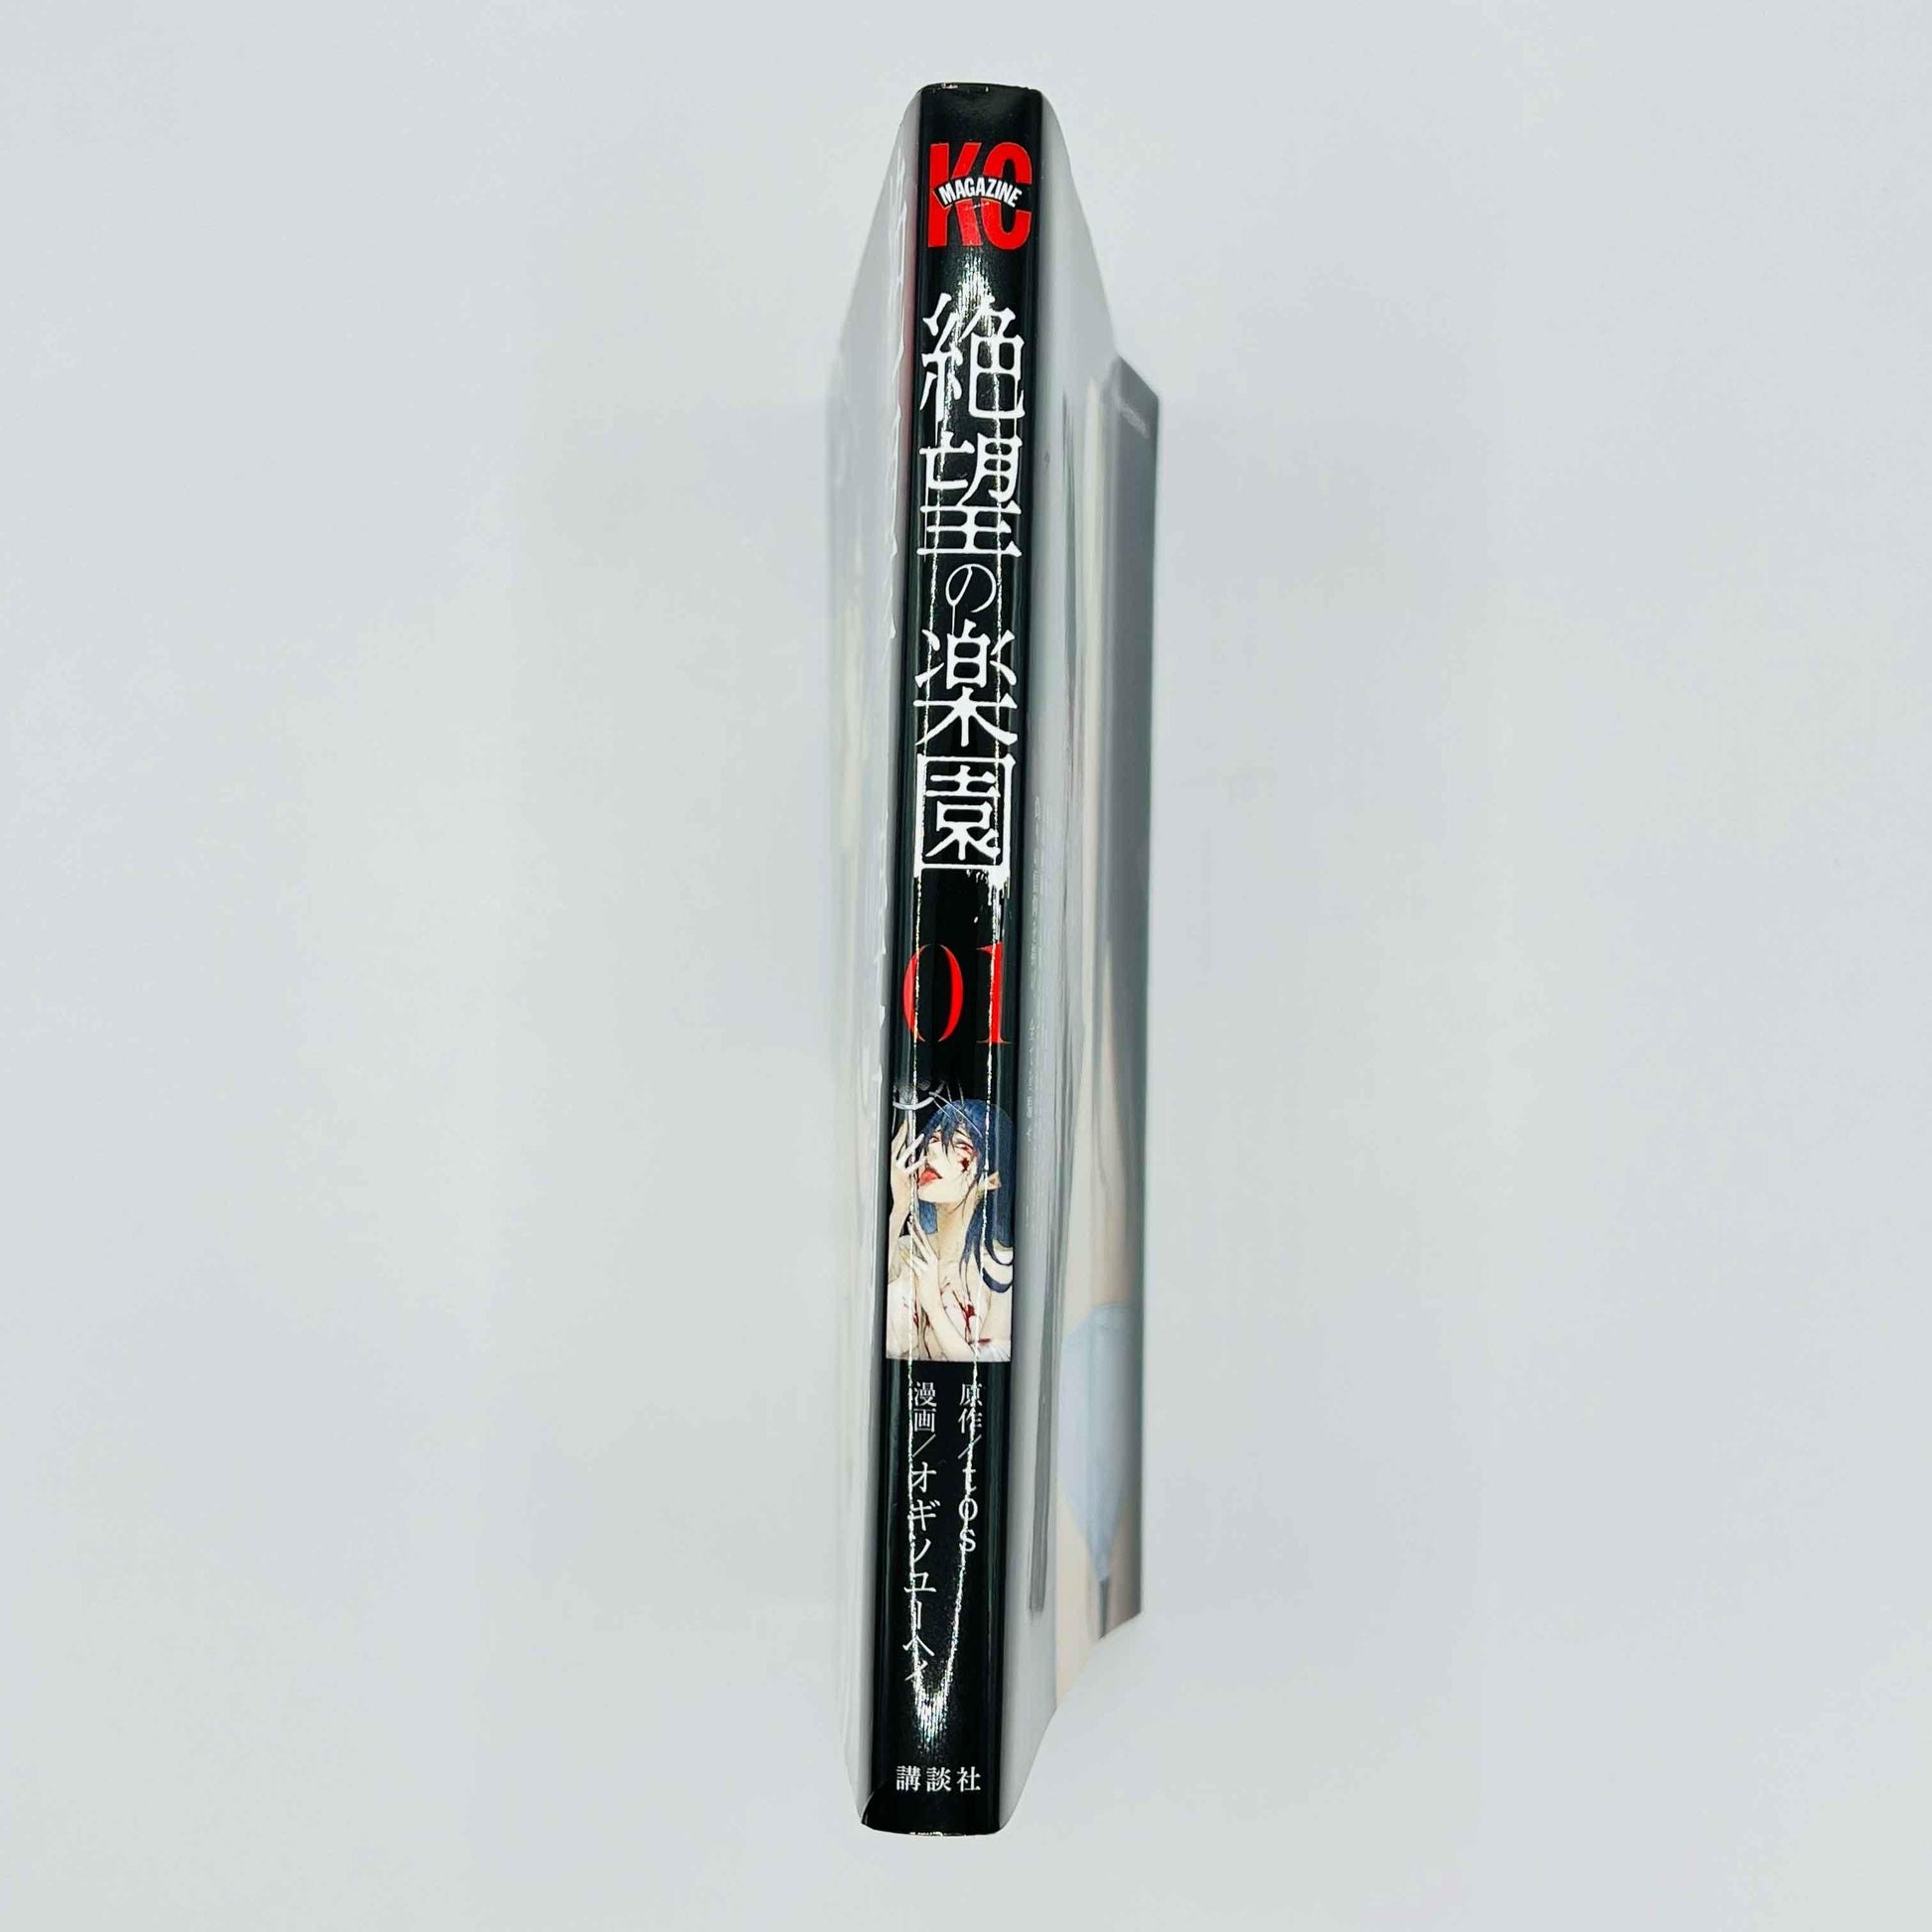 Zetsubou no Rakuen - Volume 01 - 1stPrint.net - 1st First Print Edition Manga Store - M-ZETSURAKU-01-001